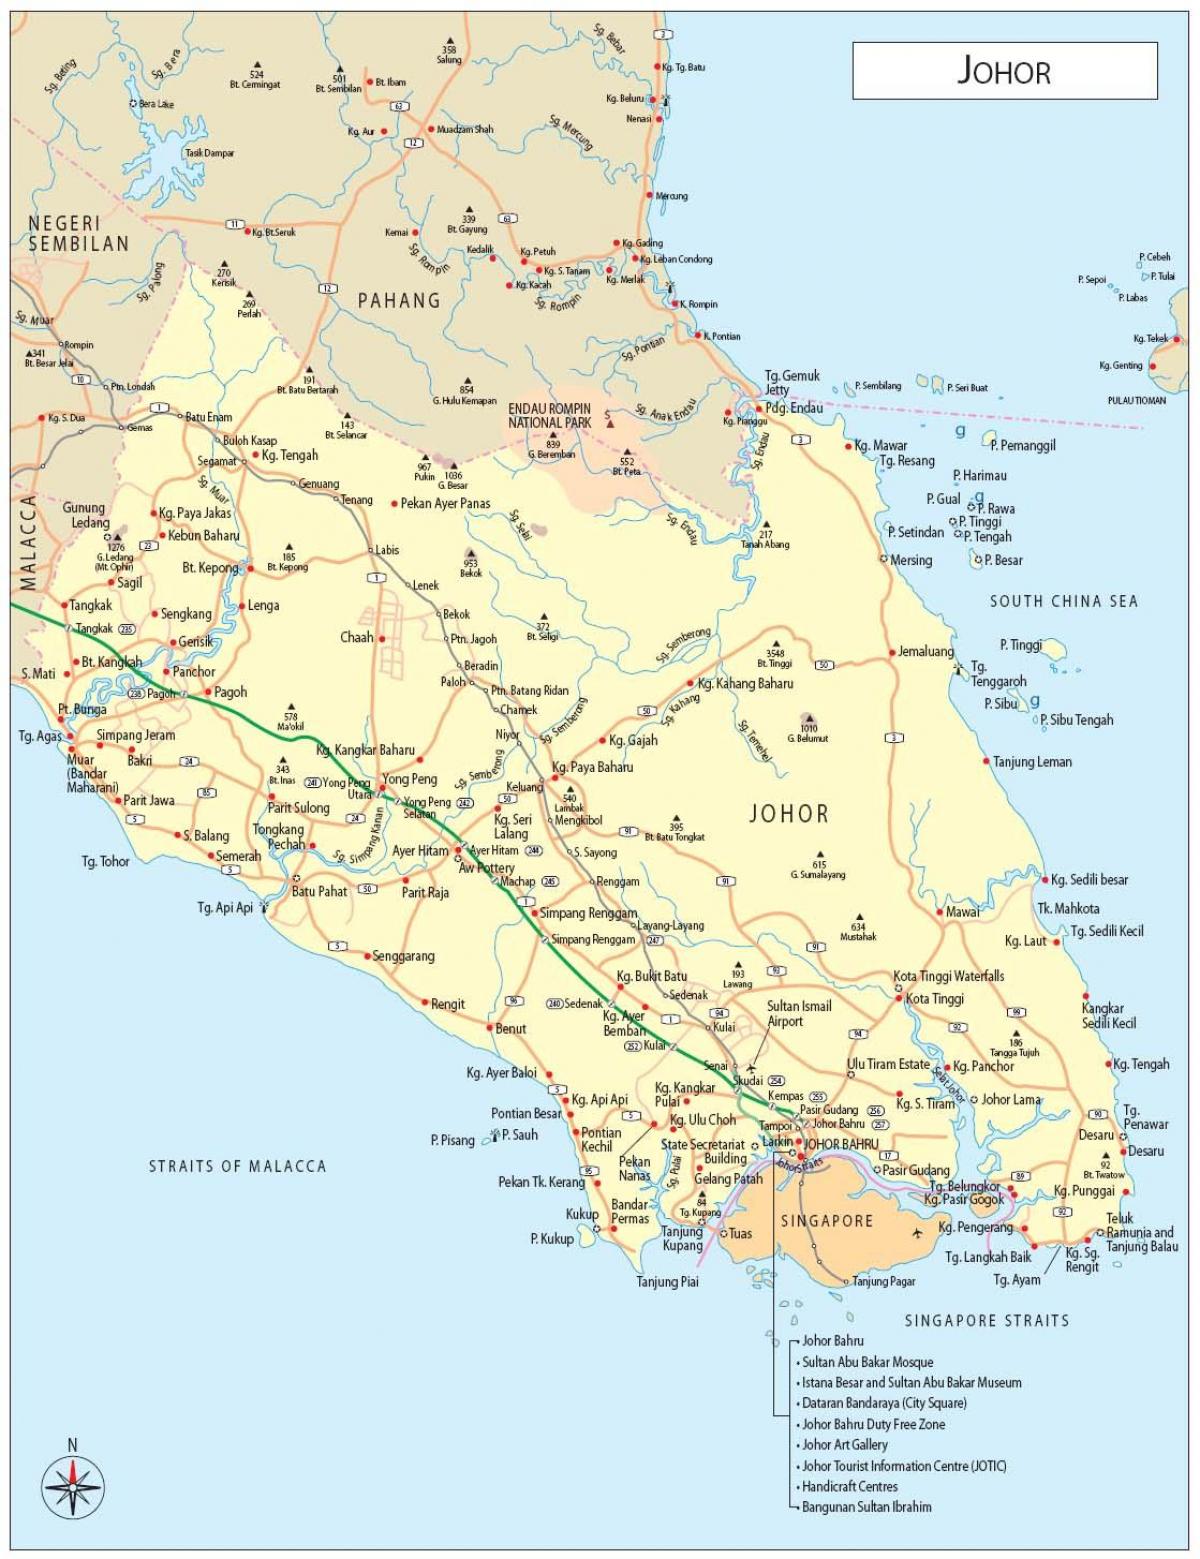 ג'. ב. המפה מלזיה